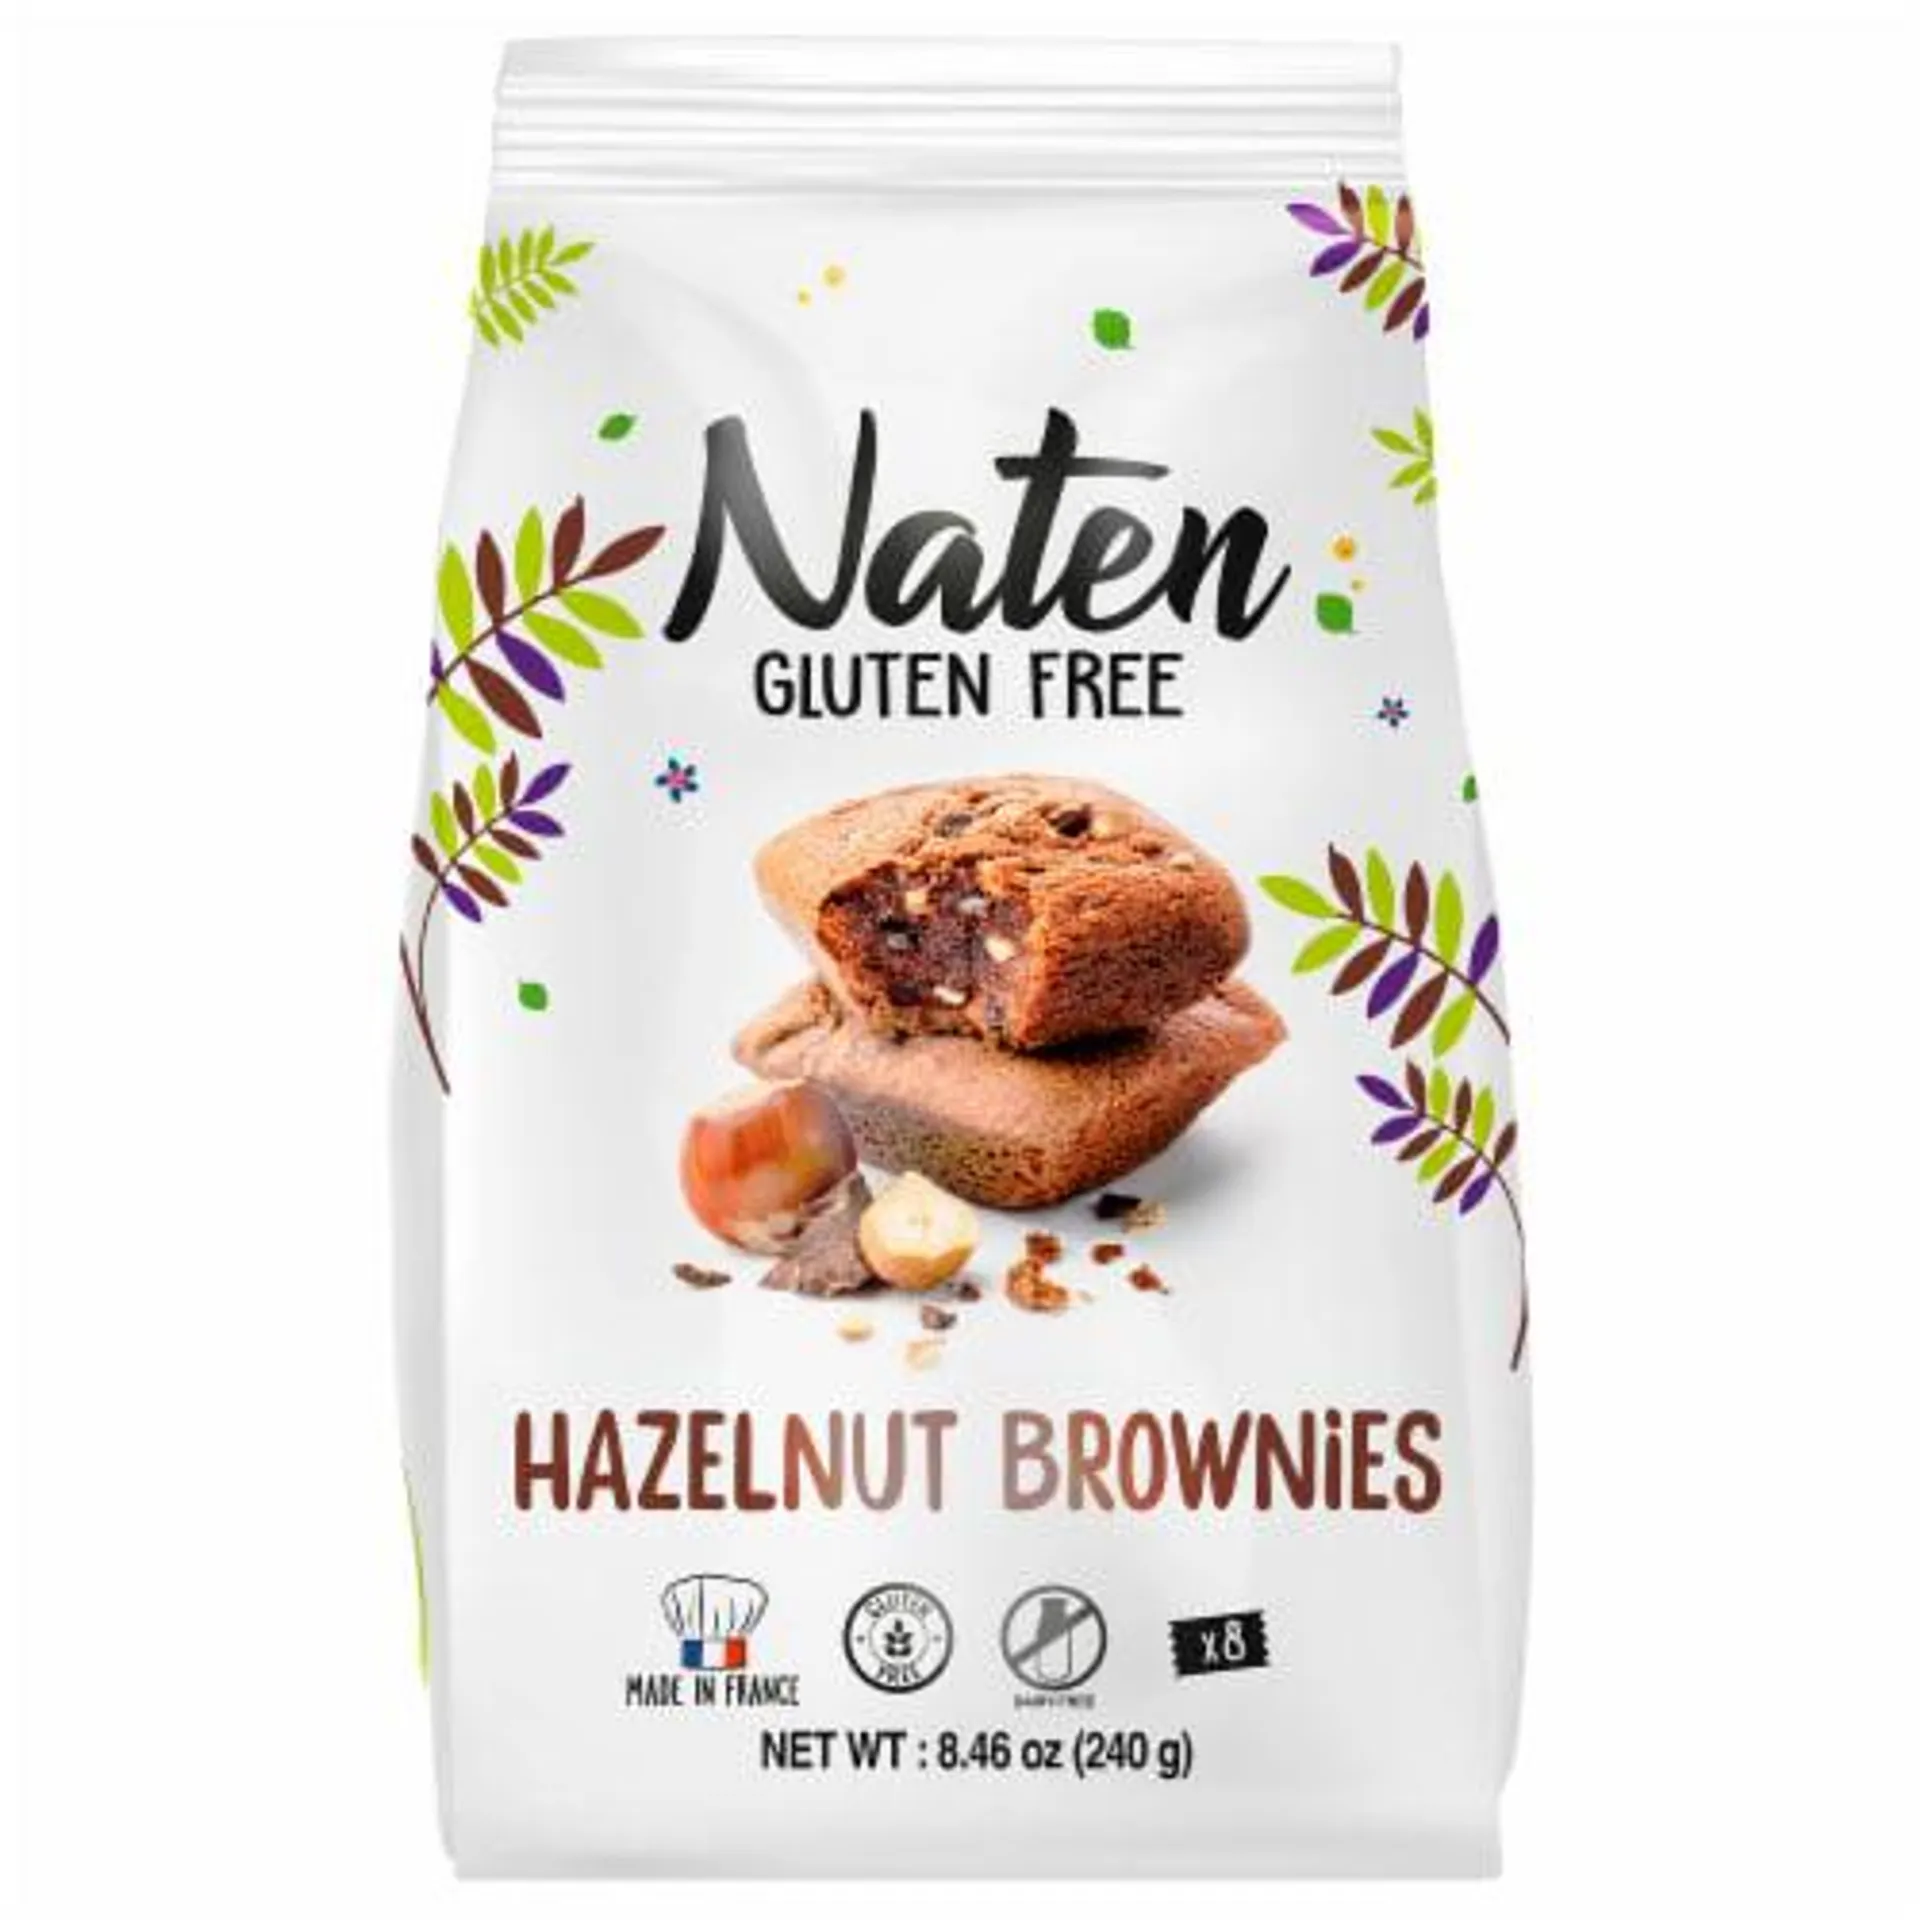 Naten Gluten Free Hazelnut Brownies